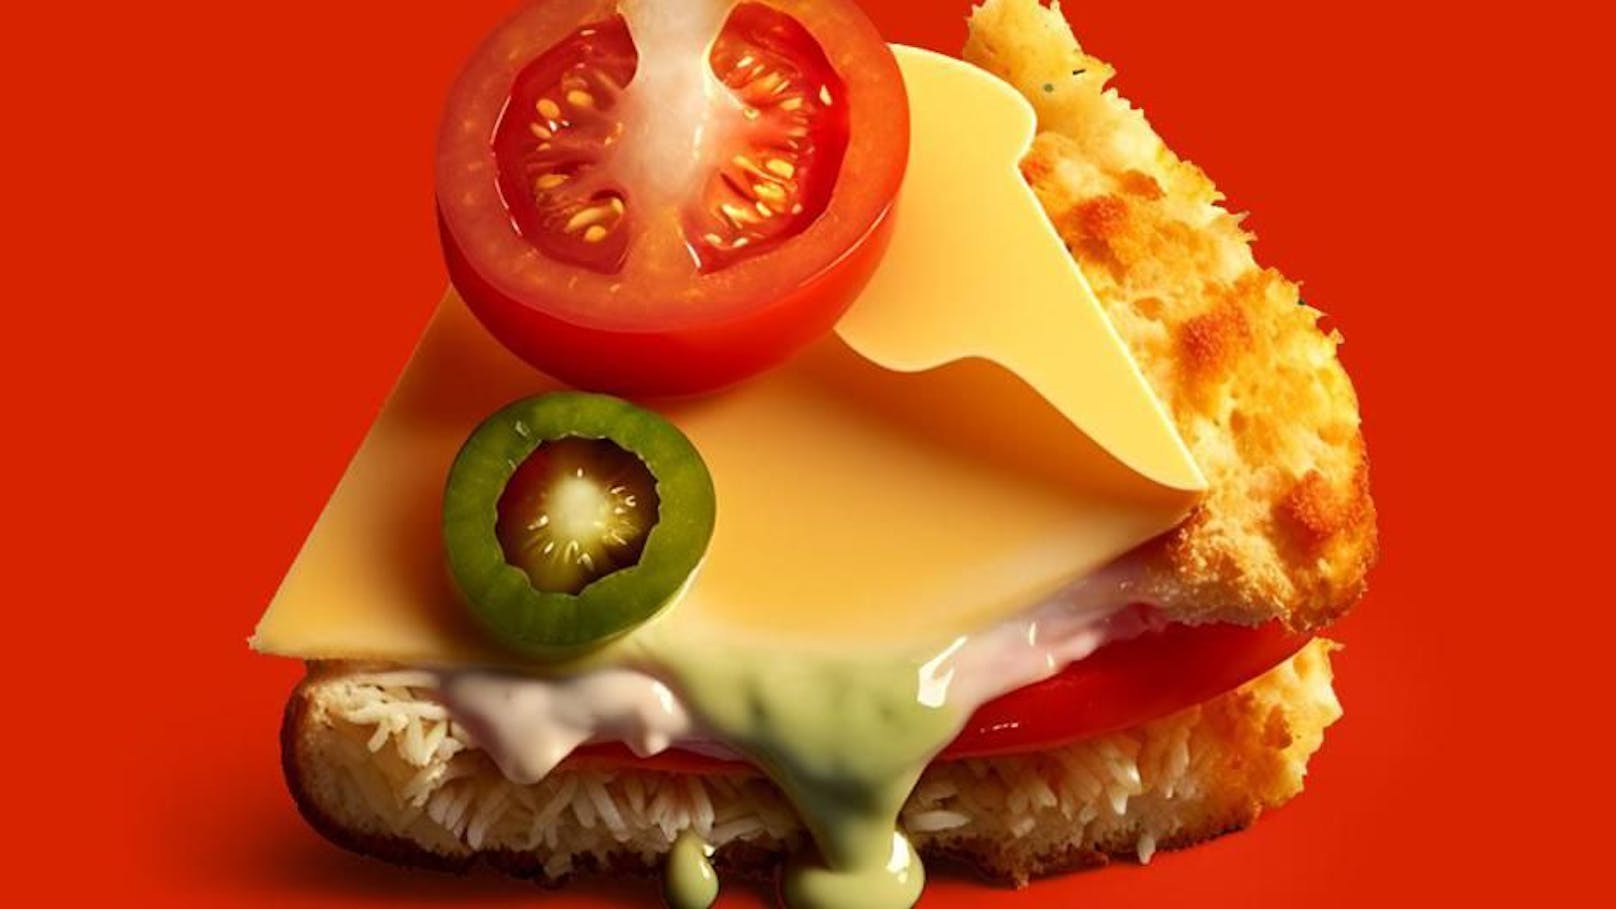 Von KI entworfen: Burger King stellt neues Produkt vor